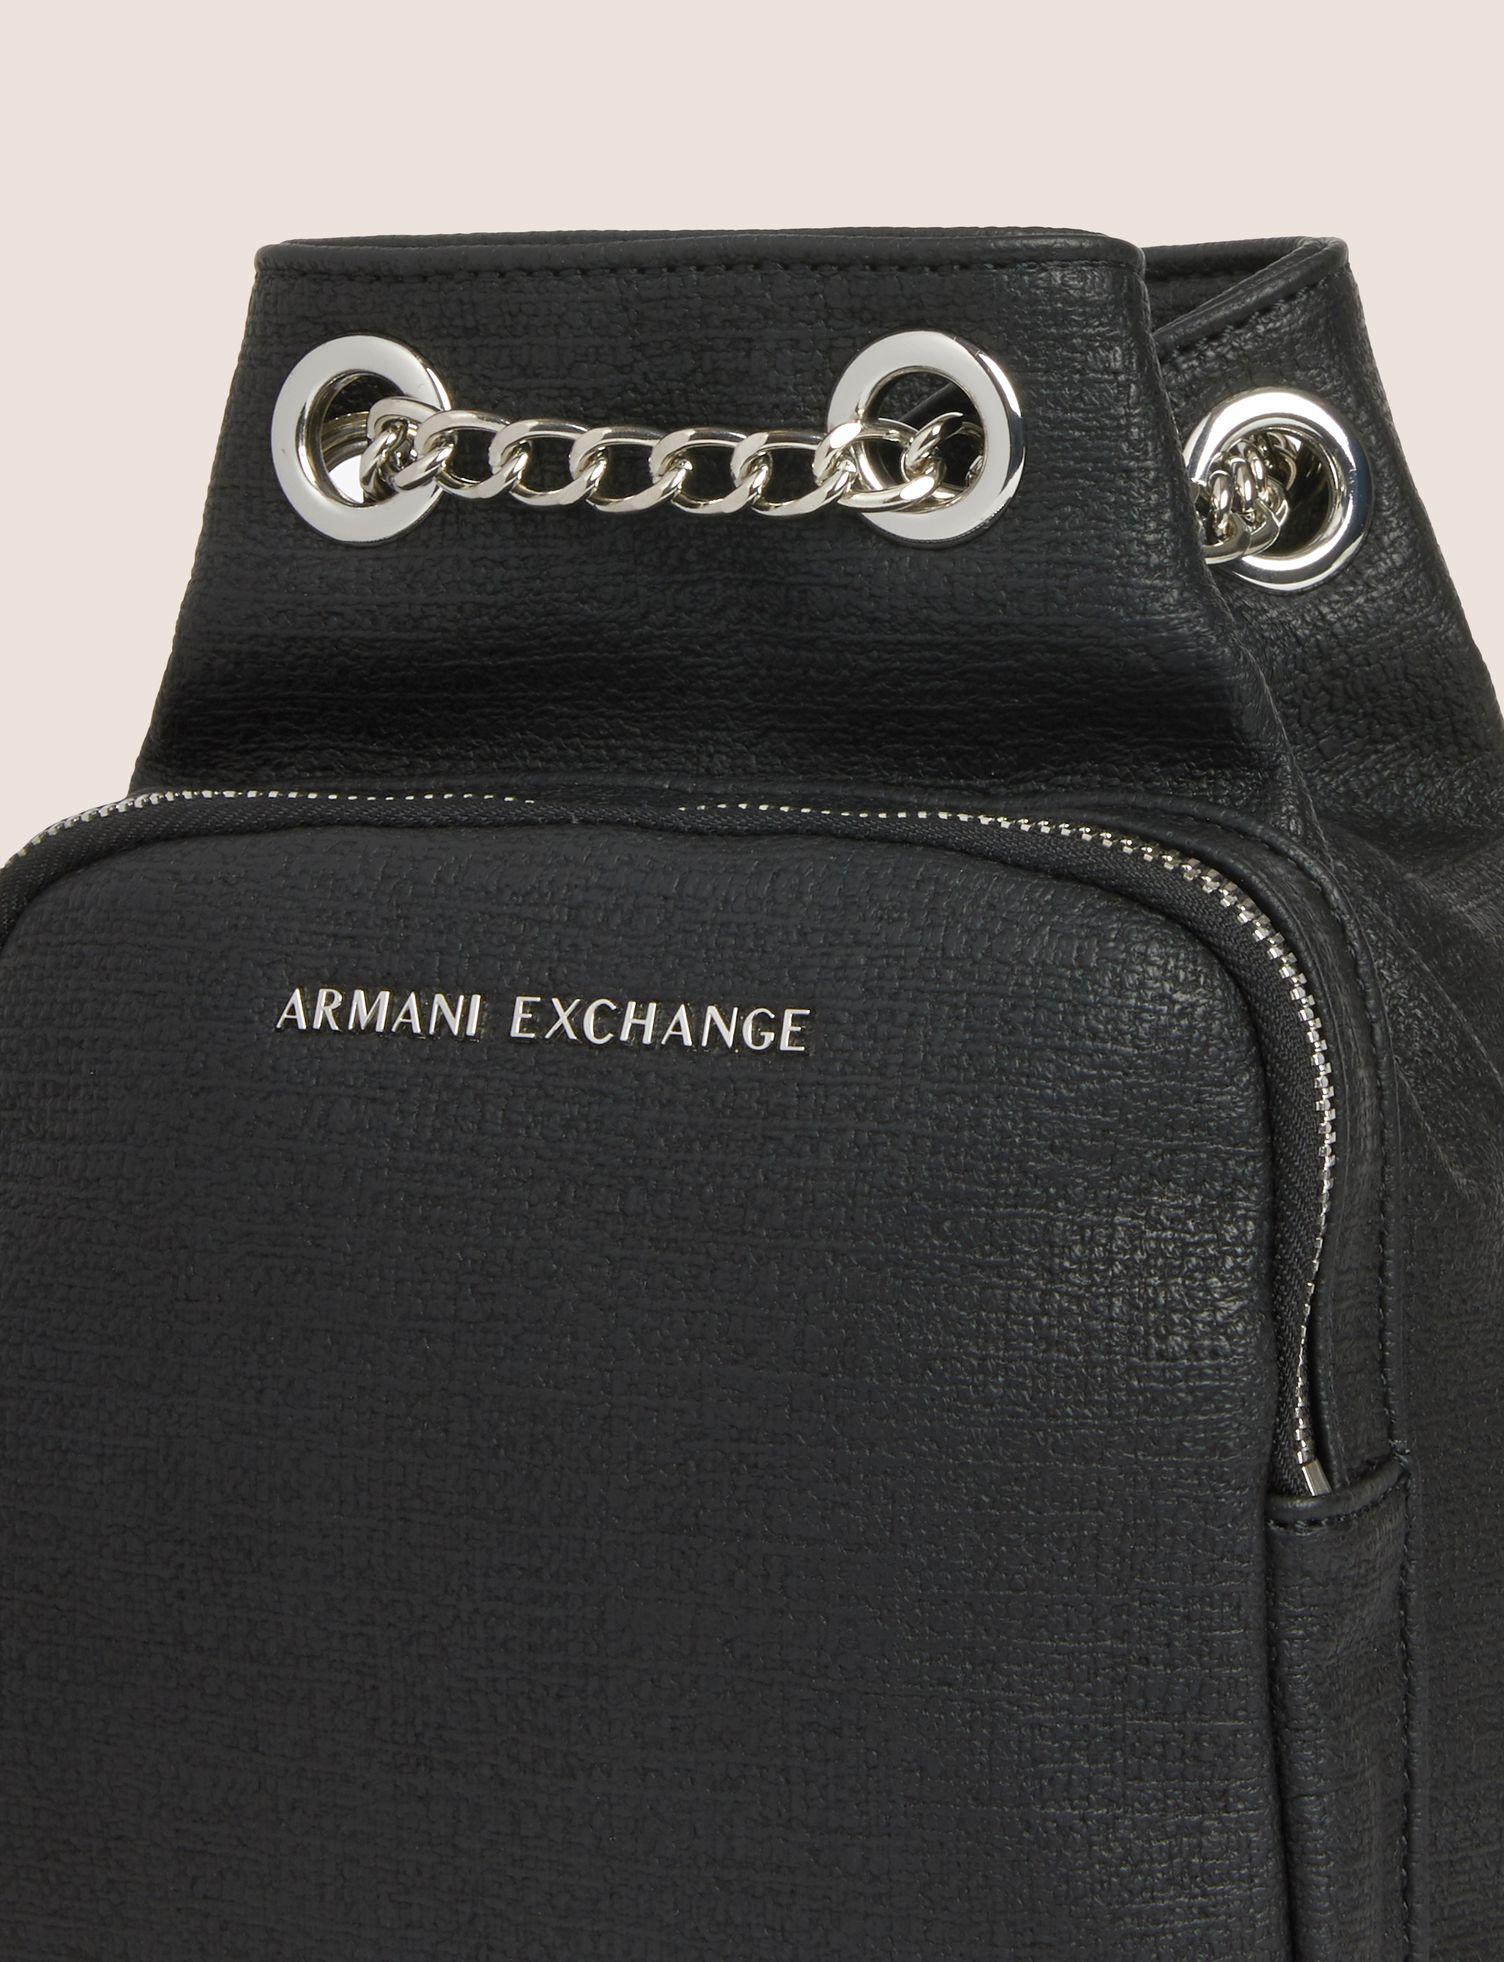 armani exchange chain